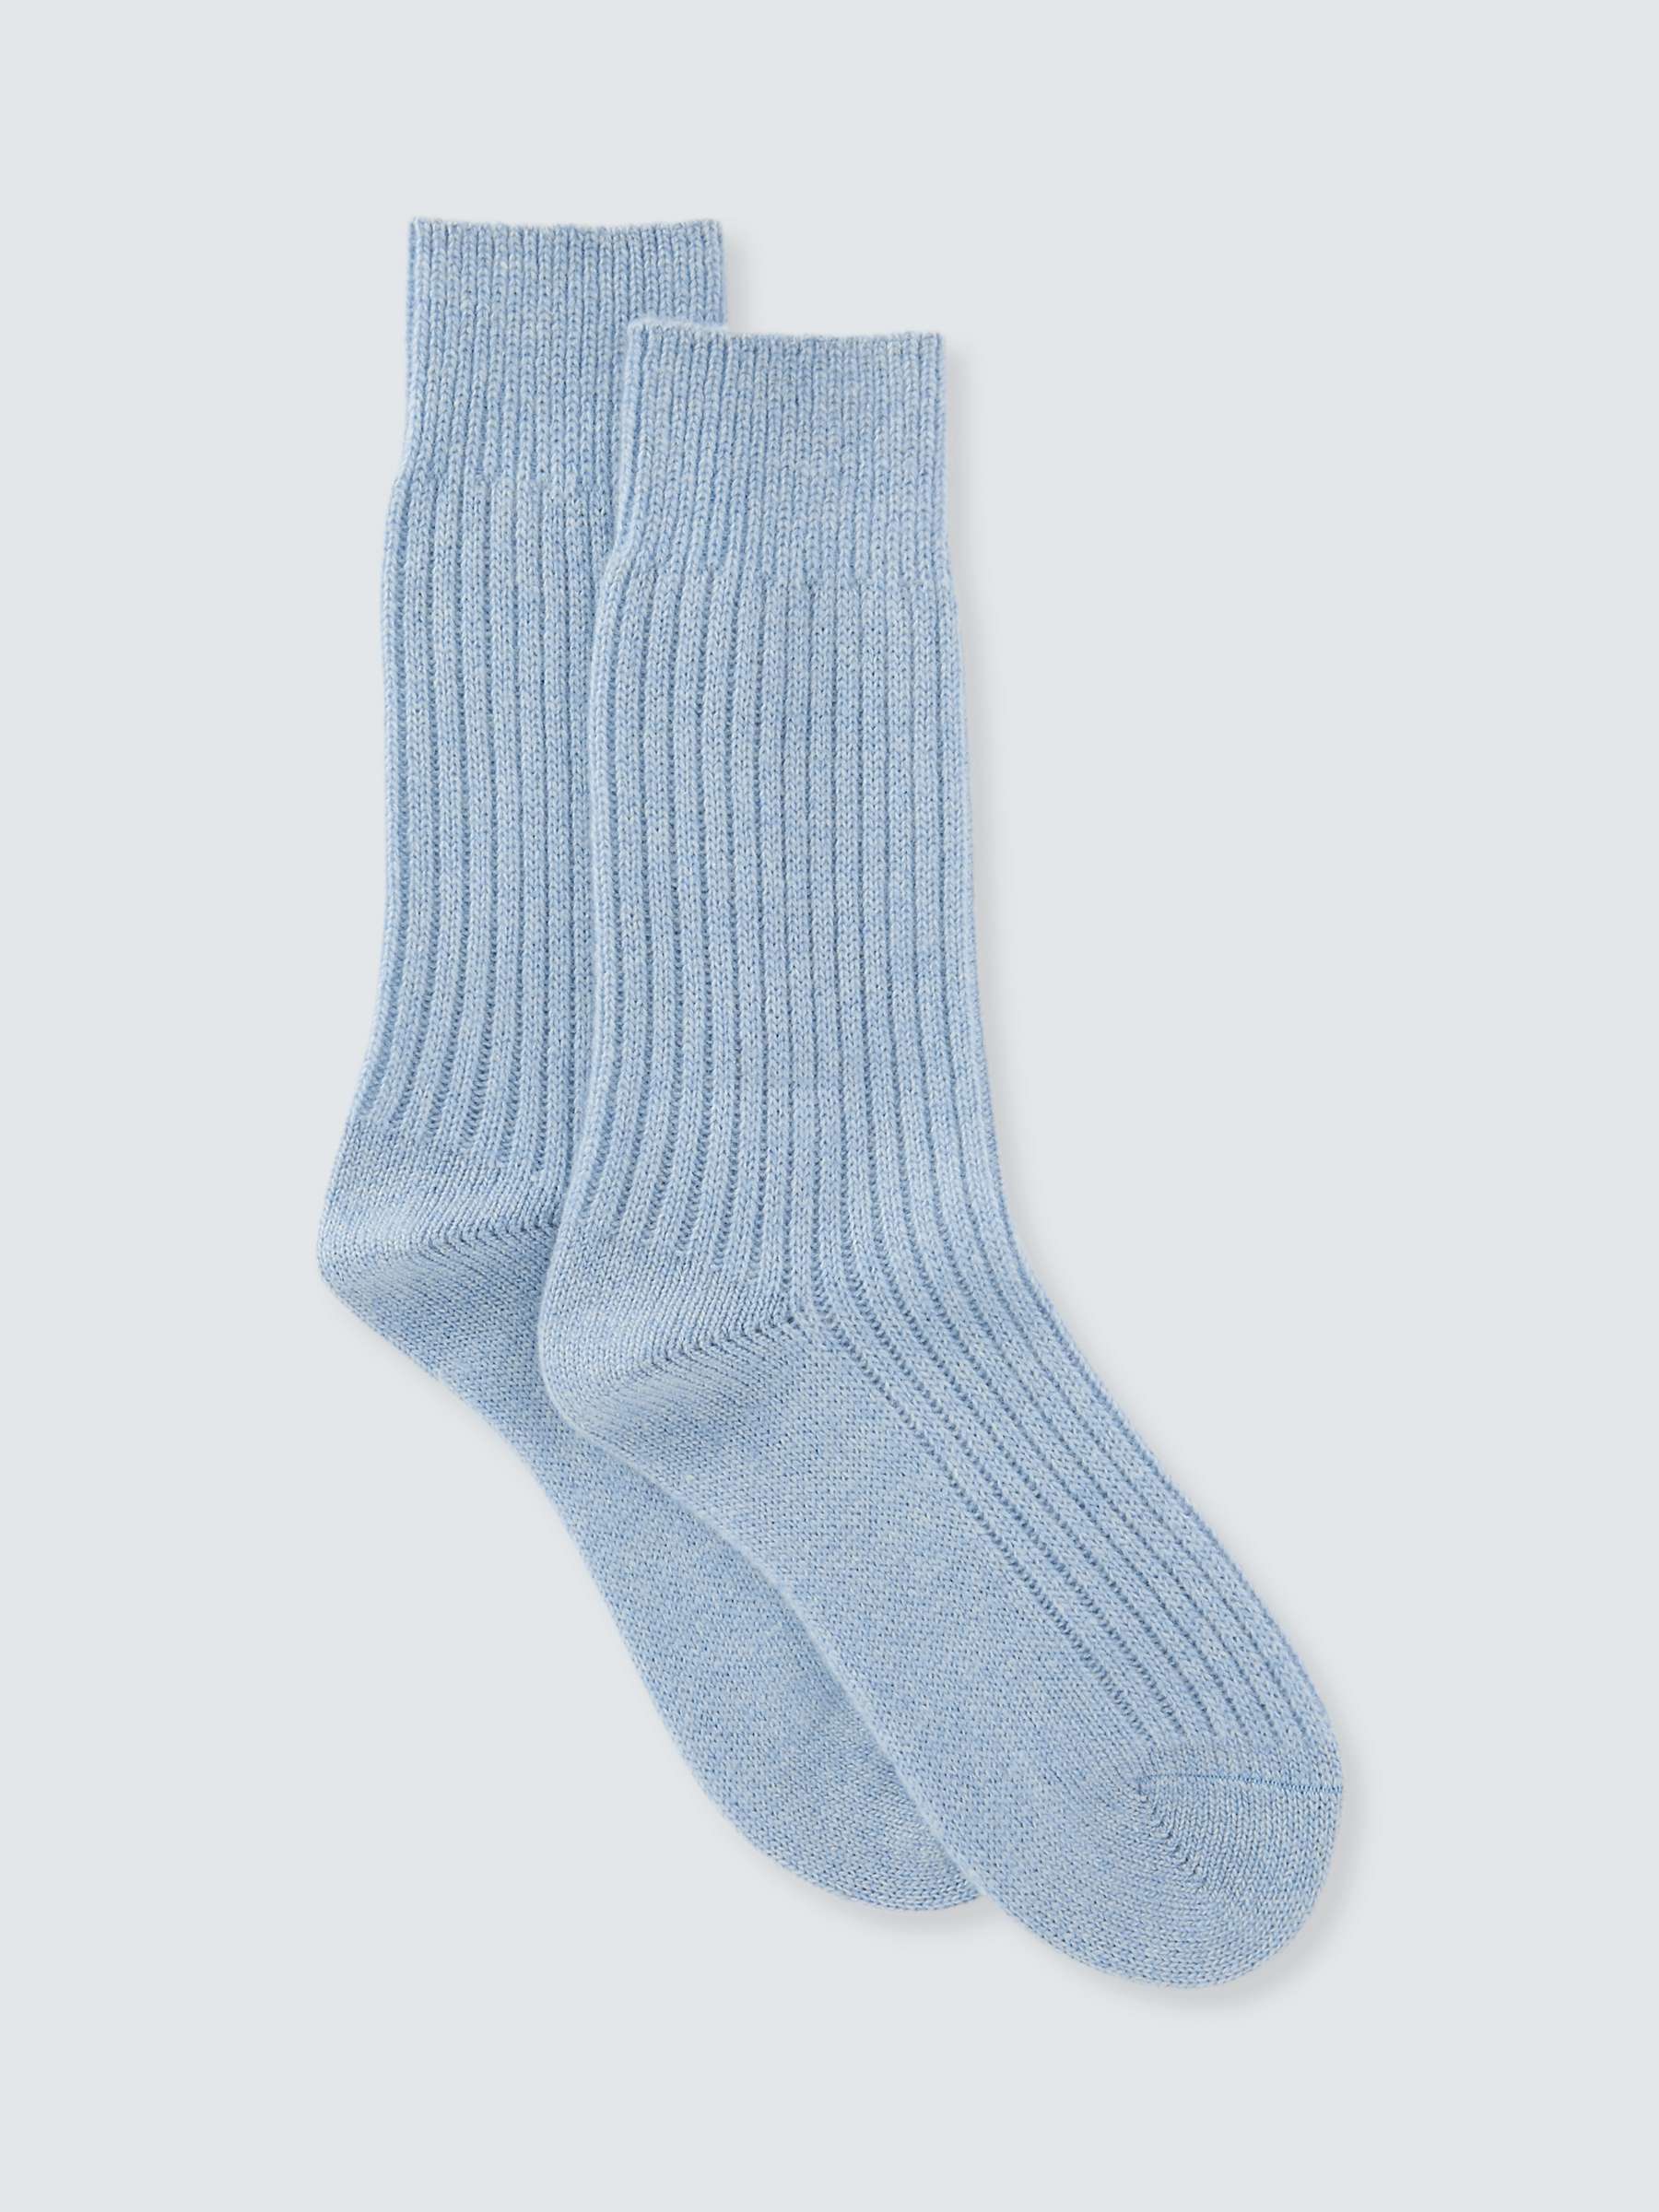 Buy John Lewis Cashmere Rich Bed Socks Online at johnlewis.com